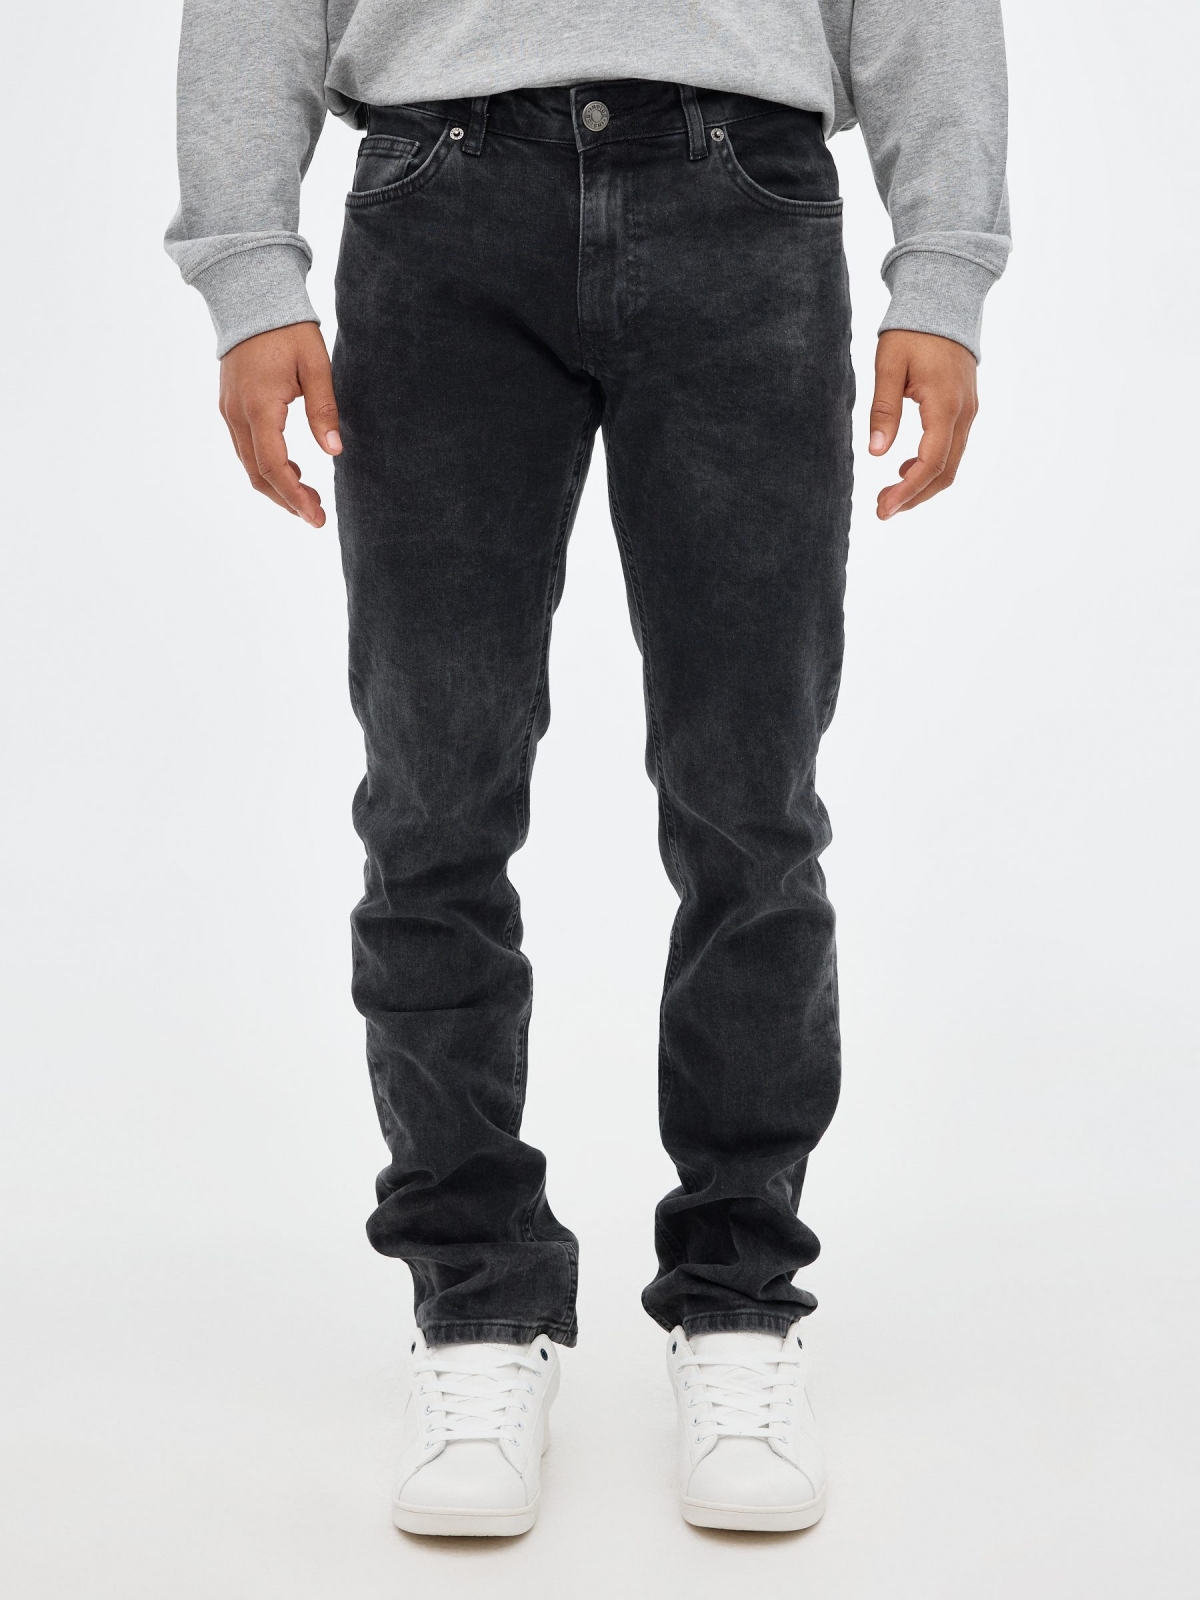 Jeans regular negro negro vista media frontal